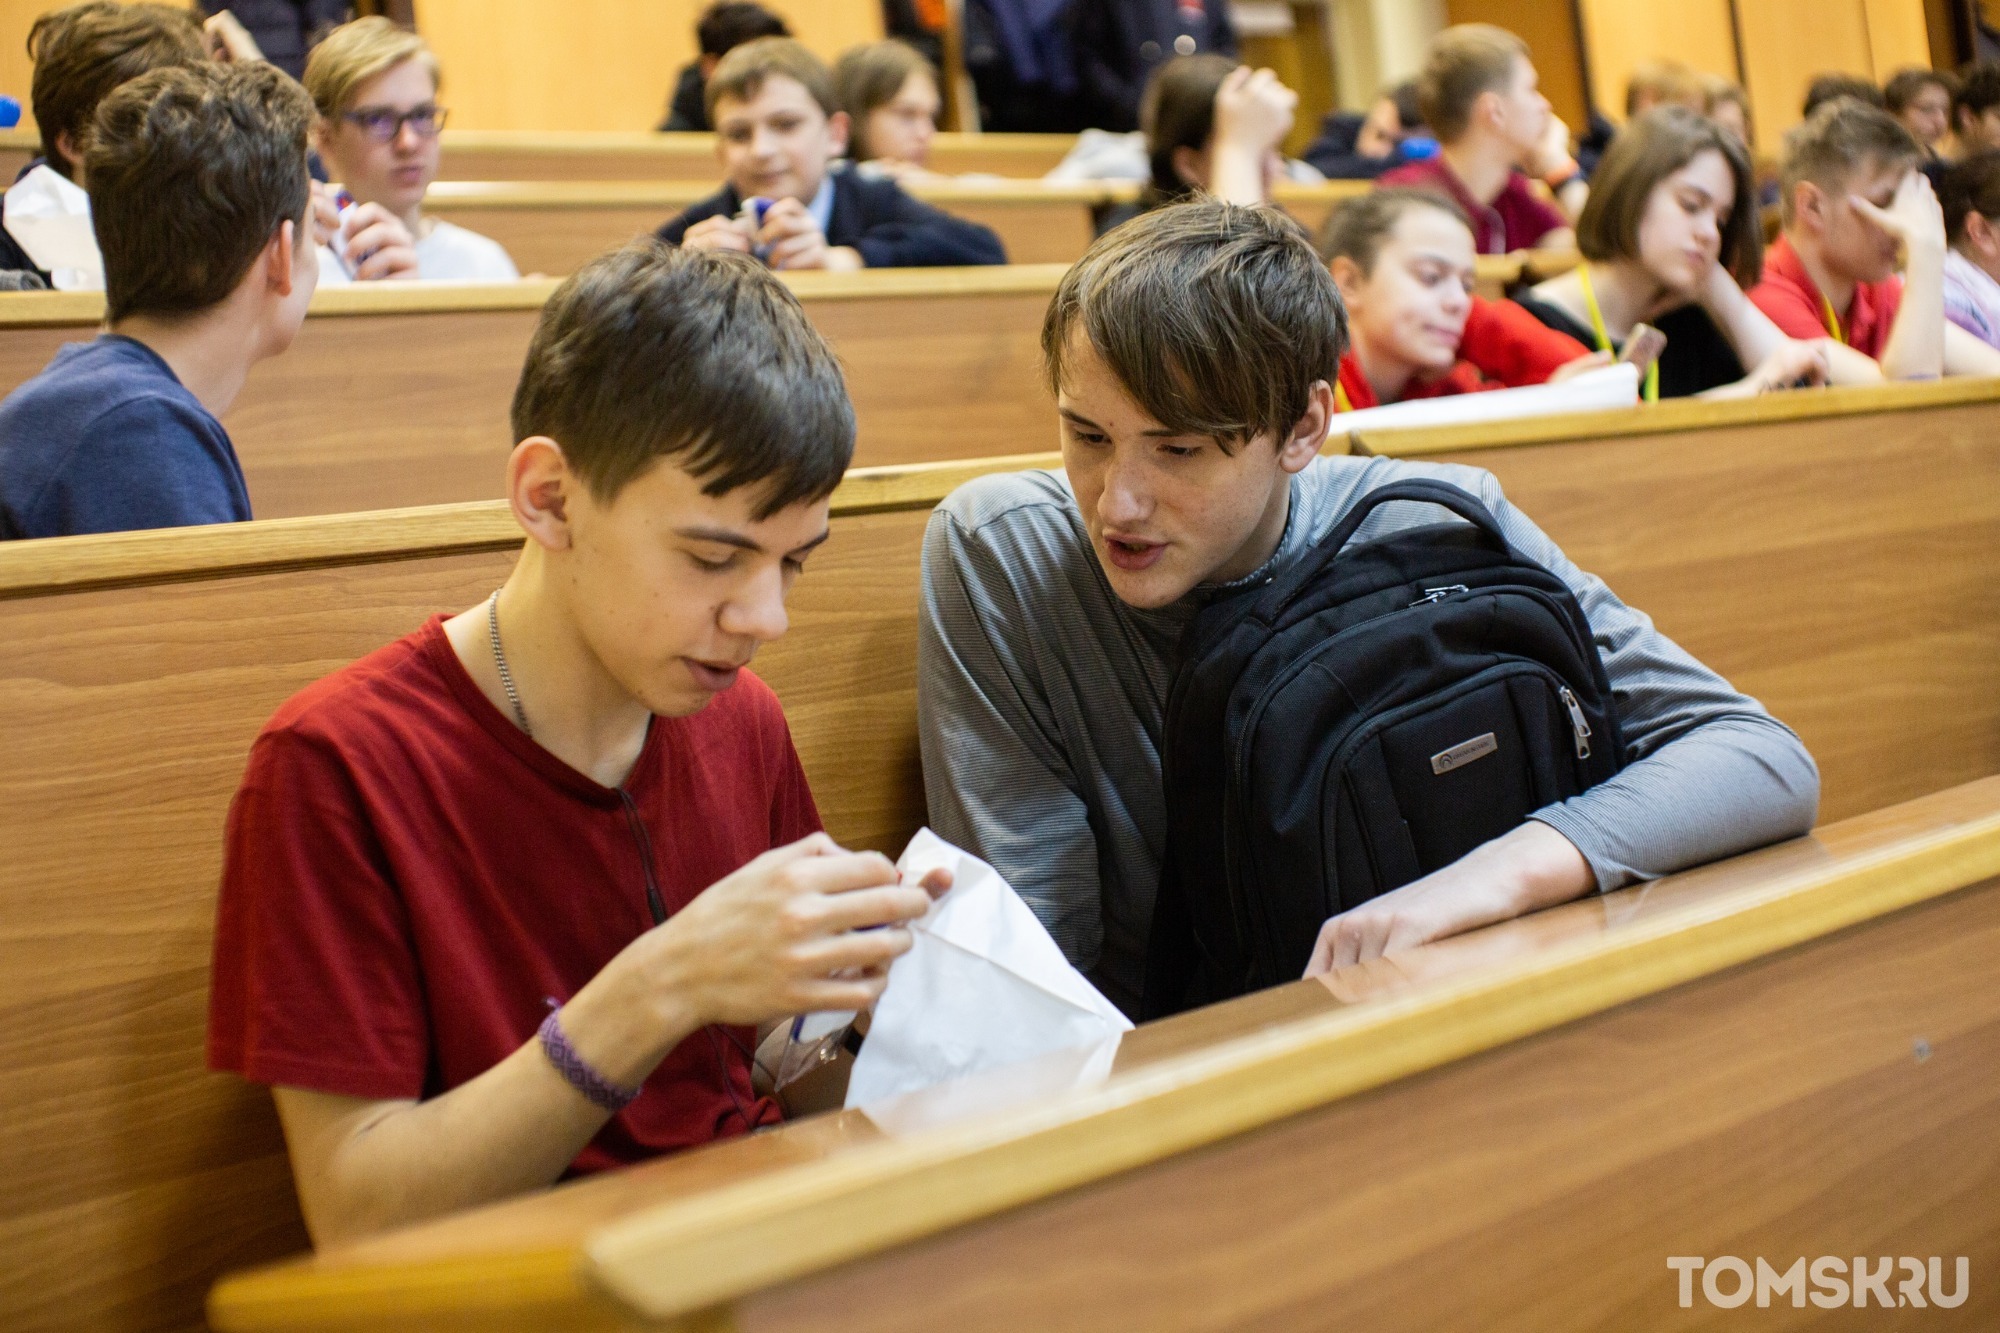 Томские студенты смогут получить бесплатный кофе за посещение библиотеки 